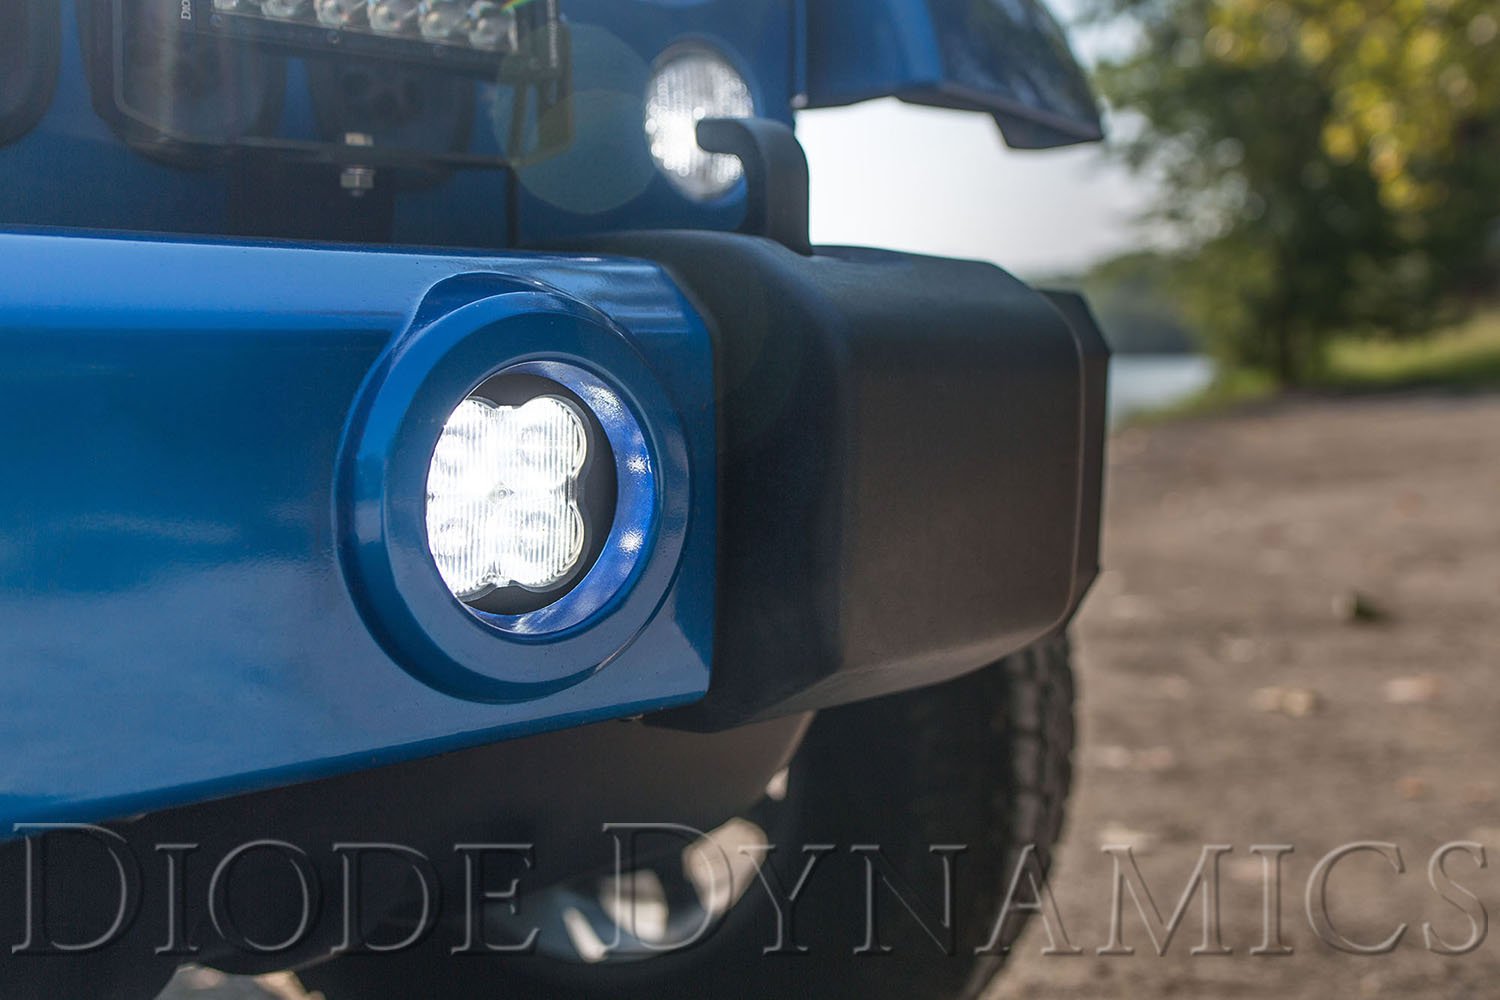 SS3 Type M LED Fog Light Kit Diode Dynamics-